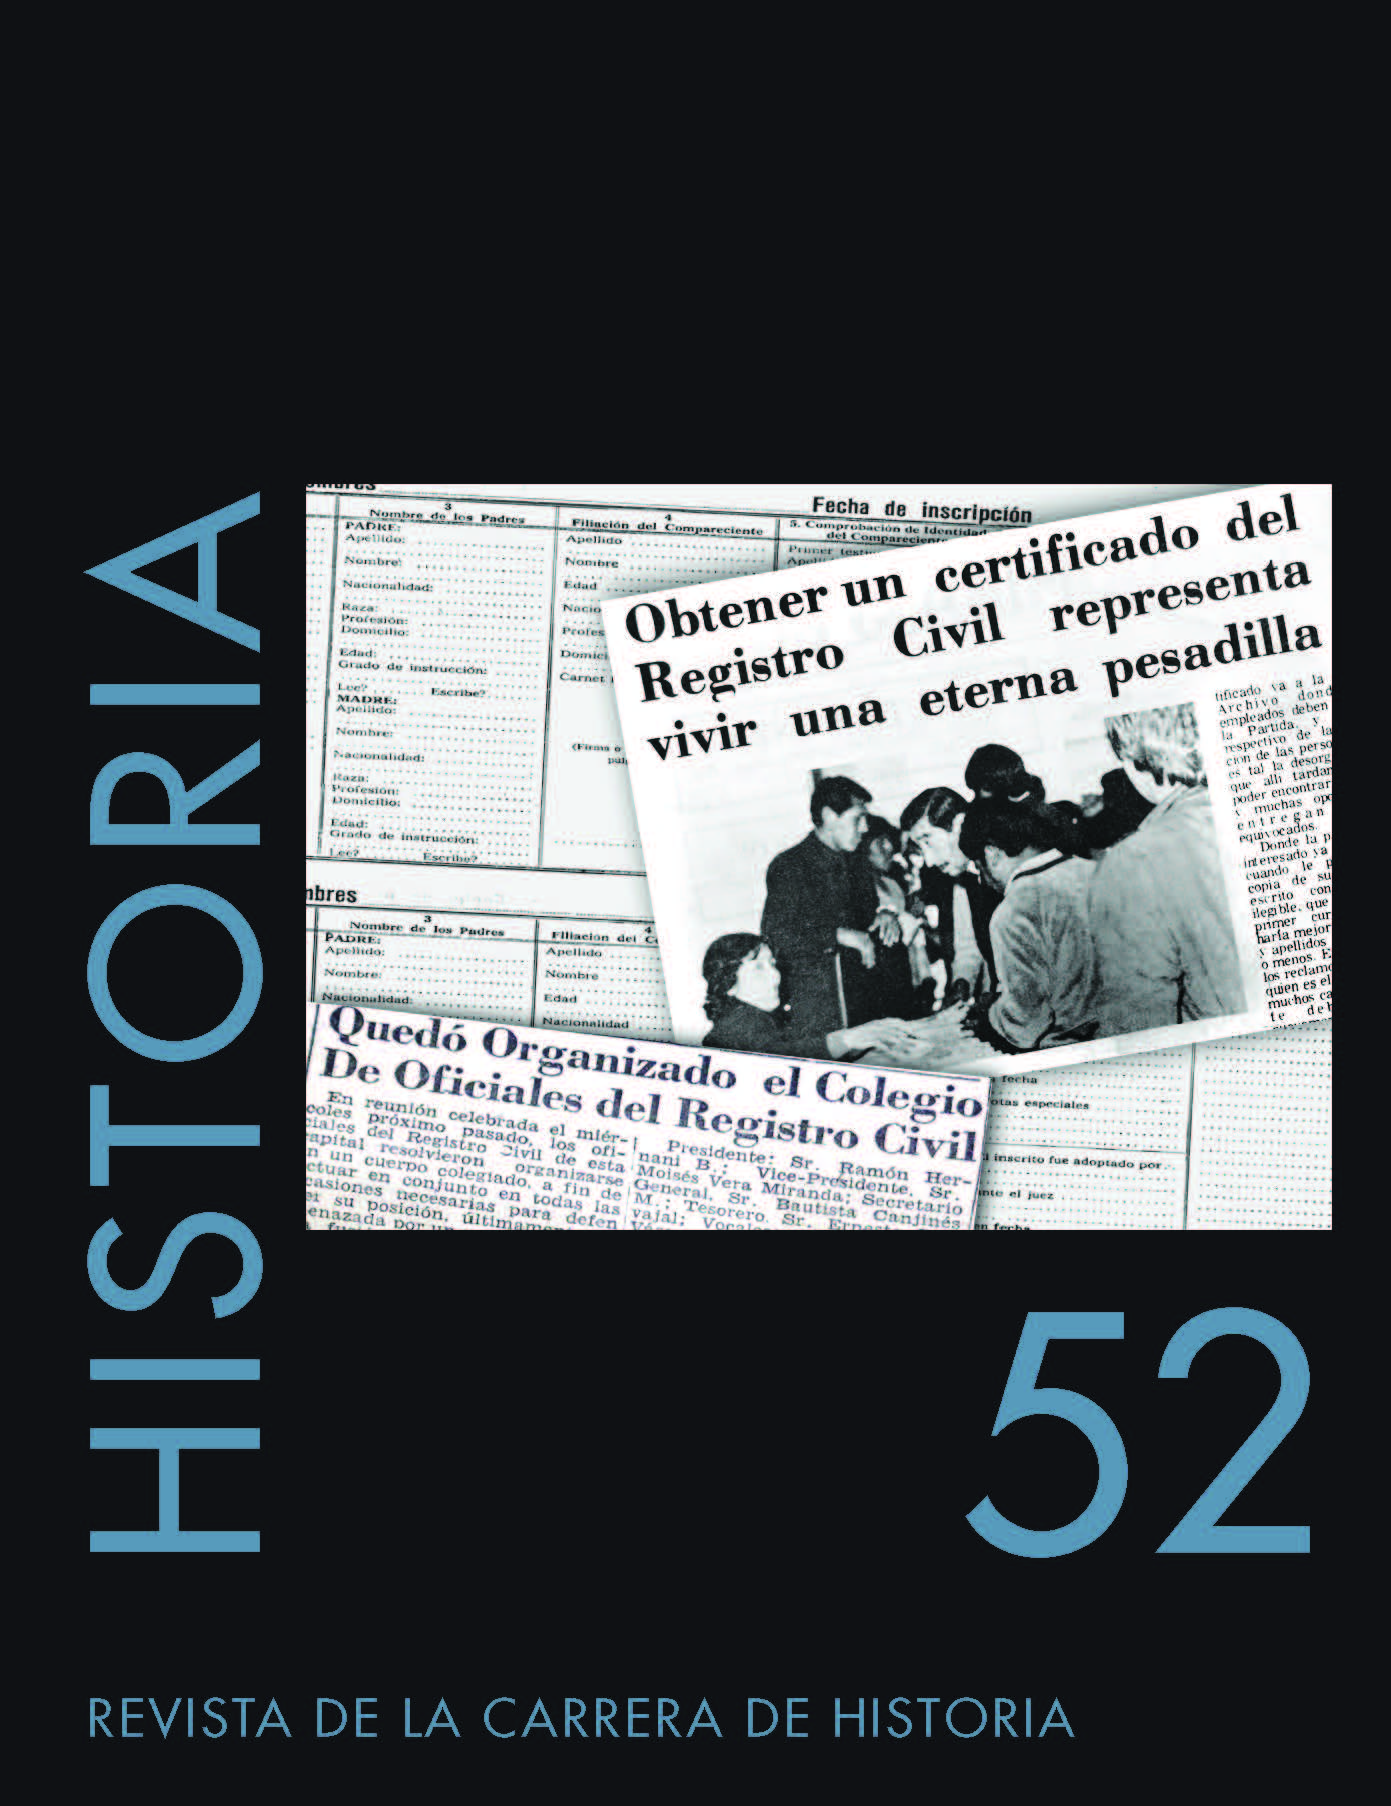 Historia Revista de la Carrera de Historia